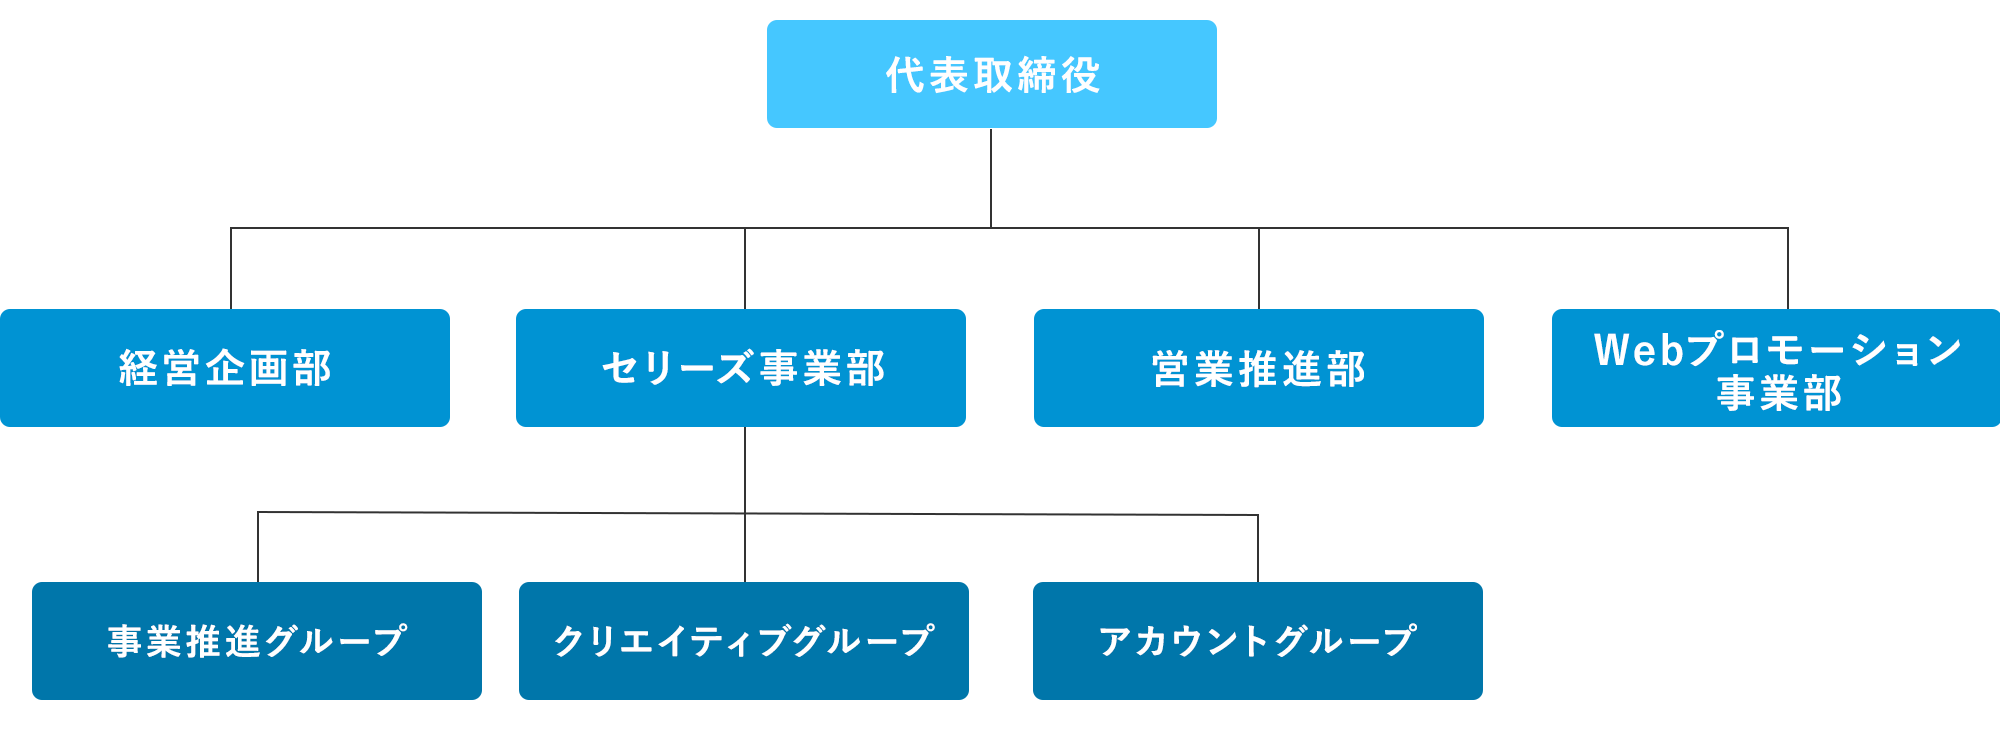 ORGANIZATION CHART 組織図